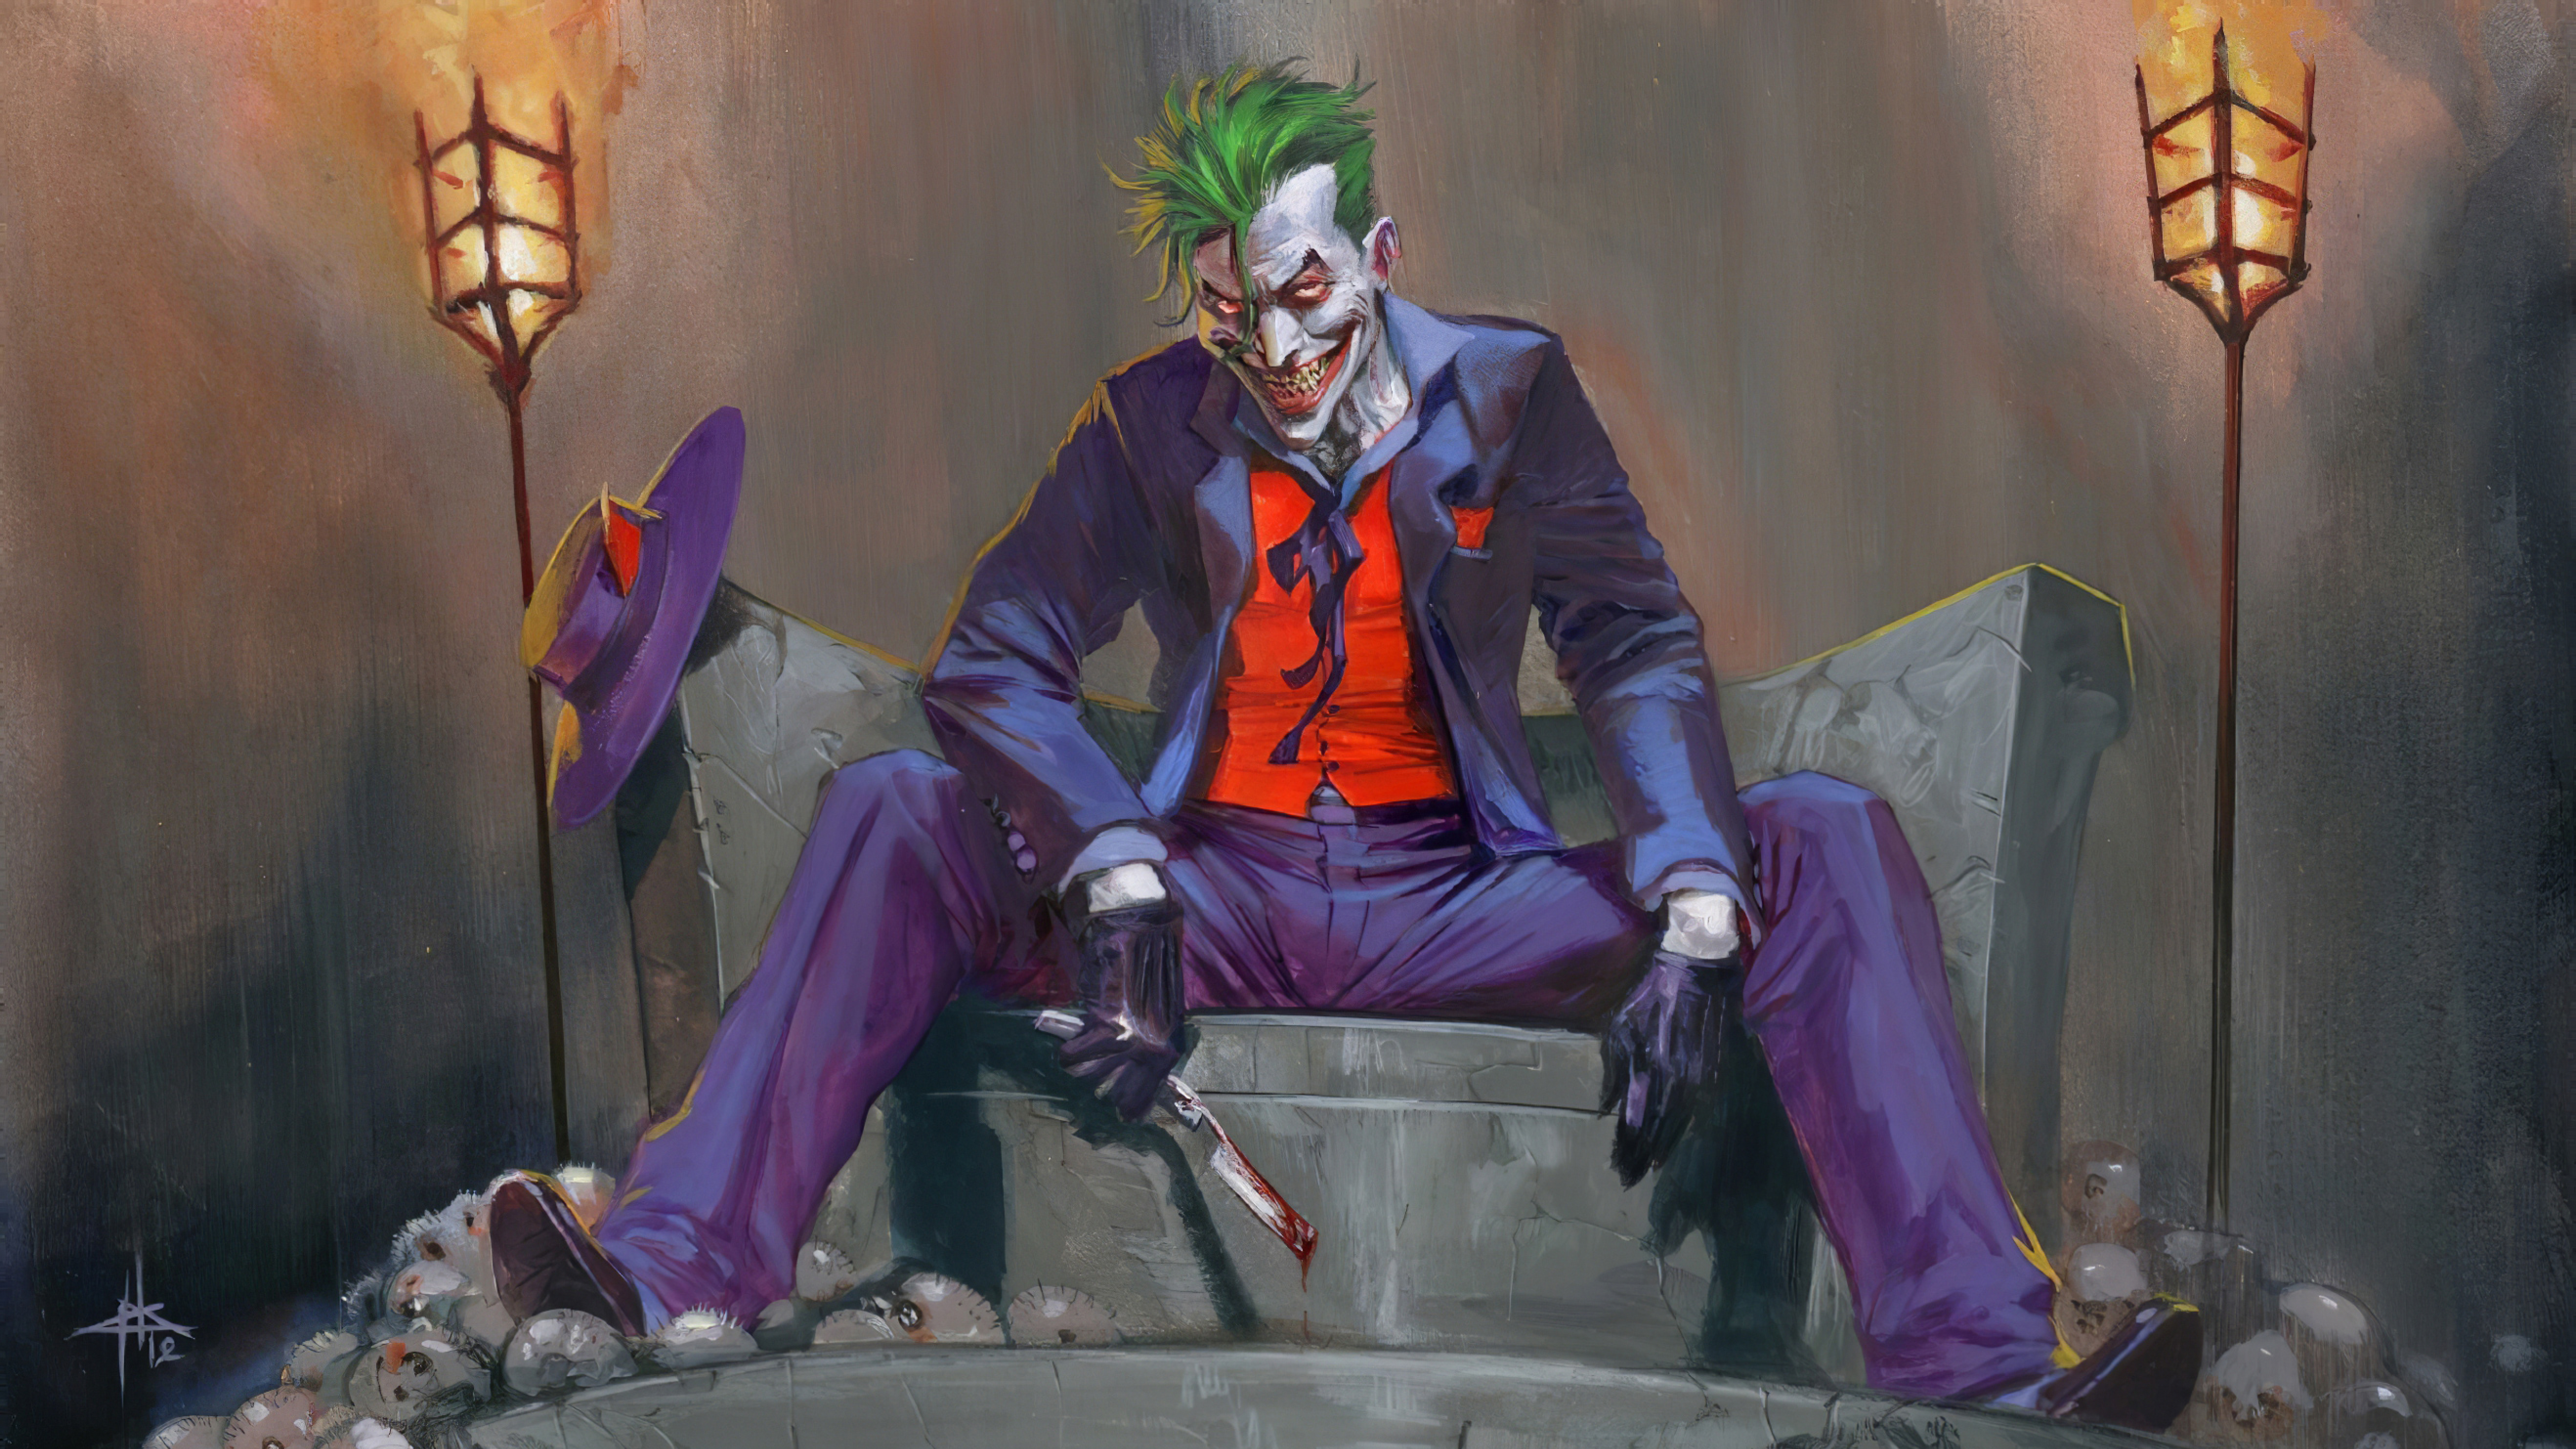 5120x2880 DC Comic Joker Art 5K Wallpaper, HD Artist 4K Wallpapers, Images,  Photos and Background - Wallpapers Den